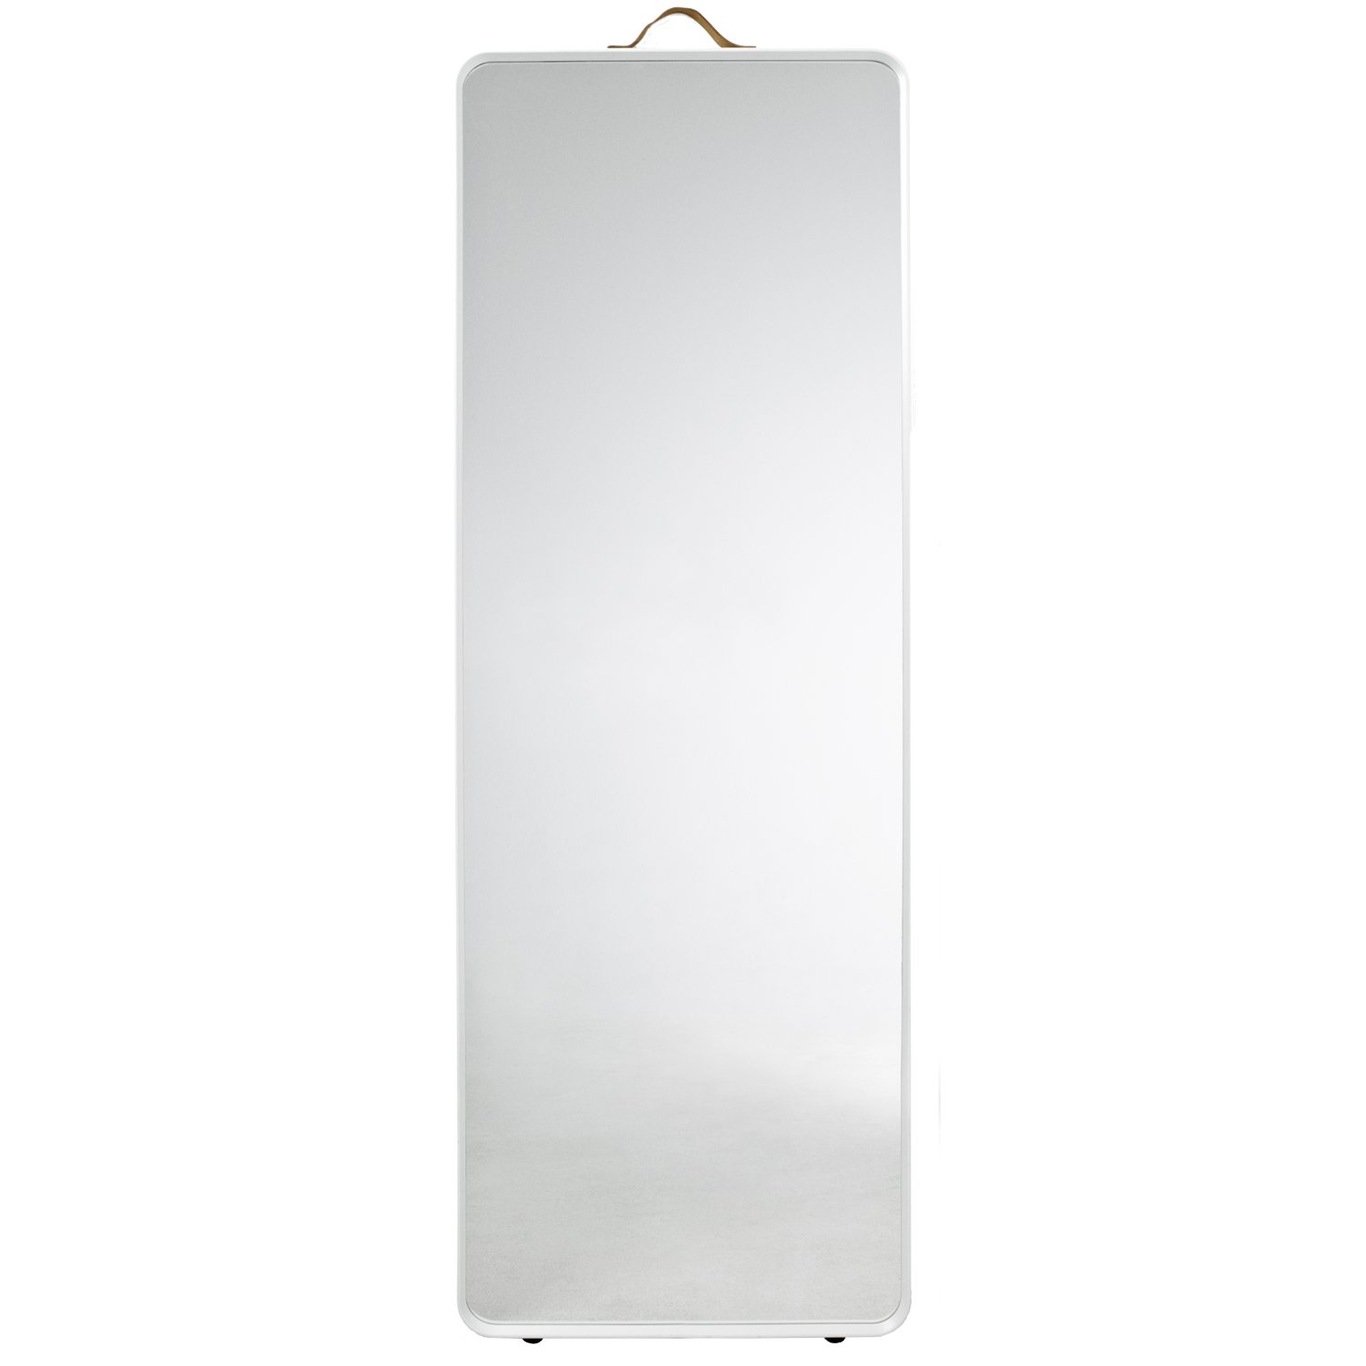 Standard floor mirror, white